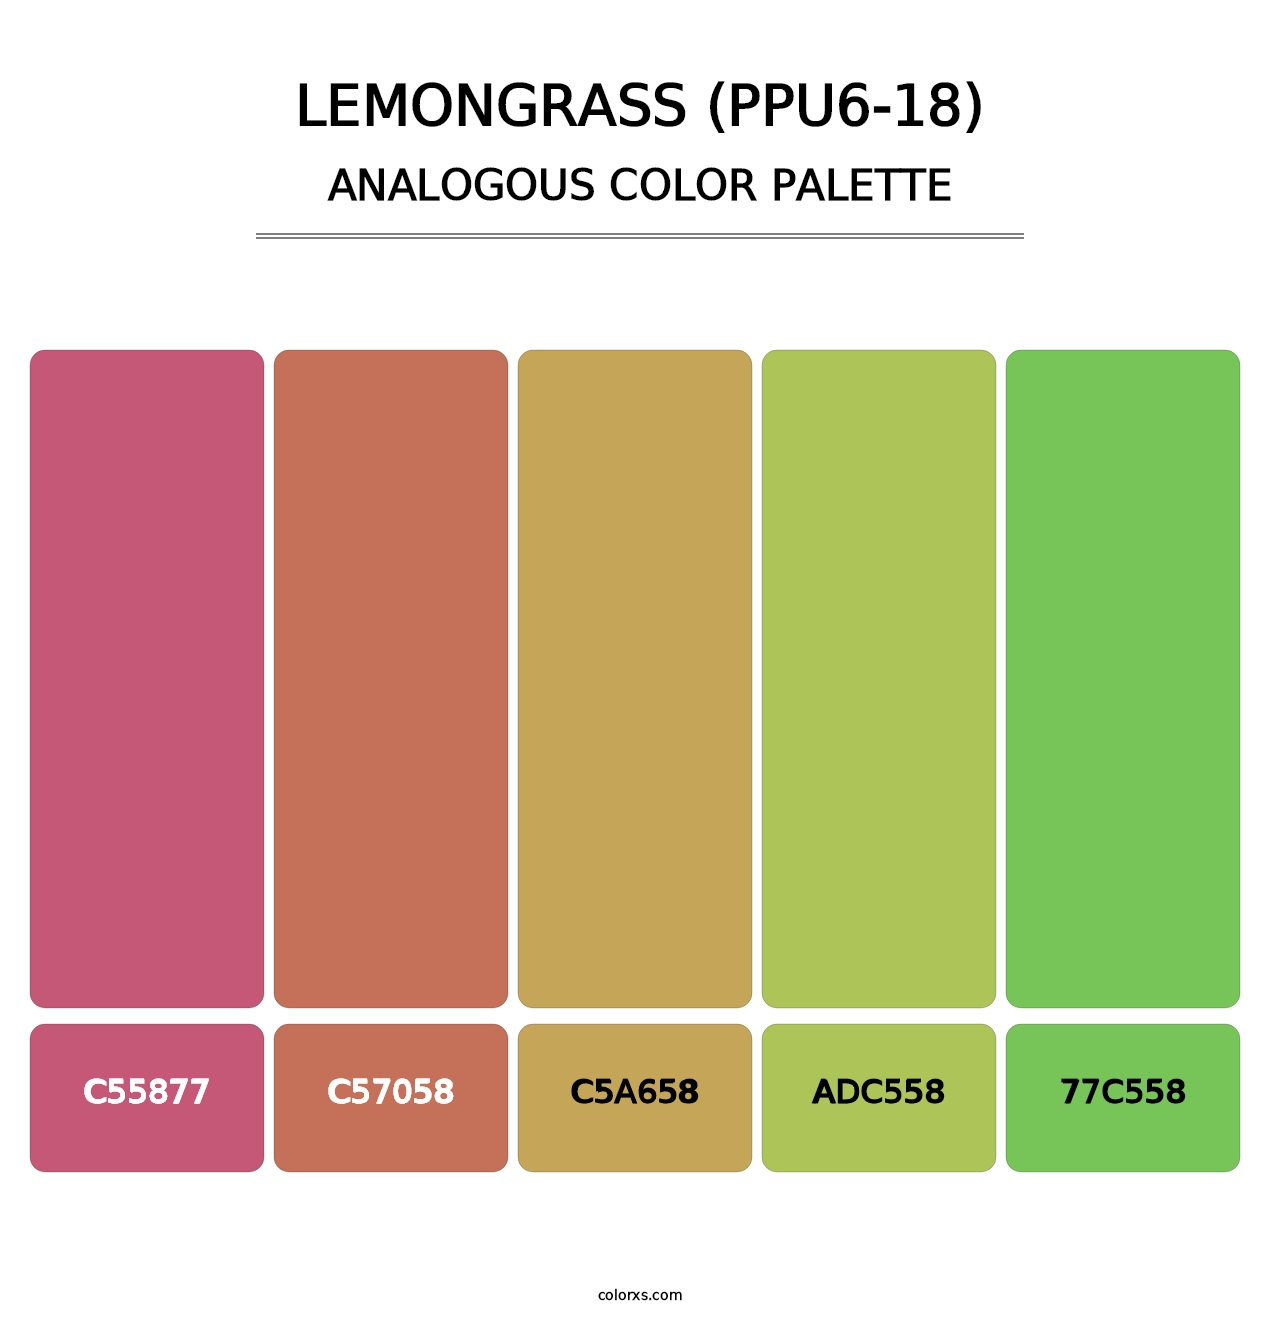 Lemongrass (PPU6-18) - Analogous Color Palette